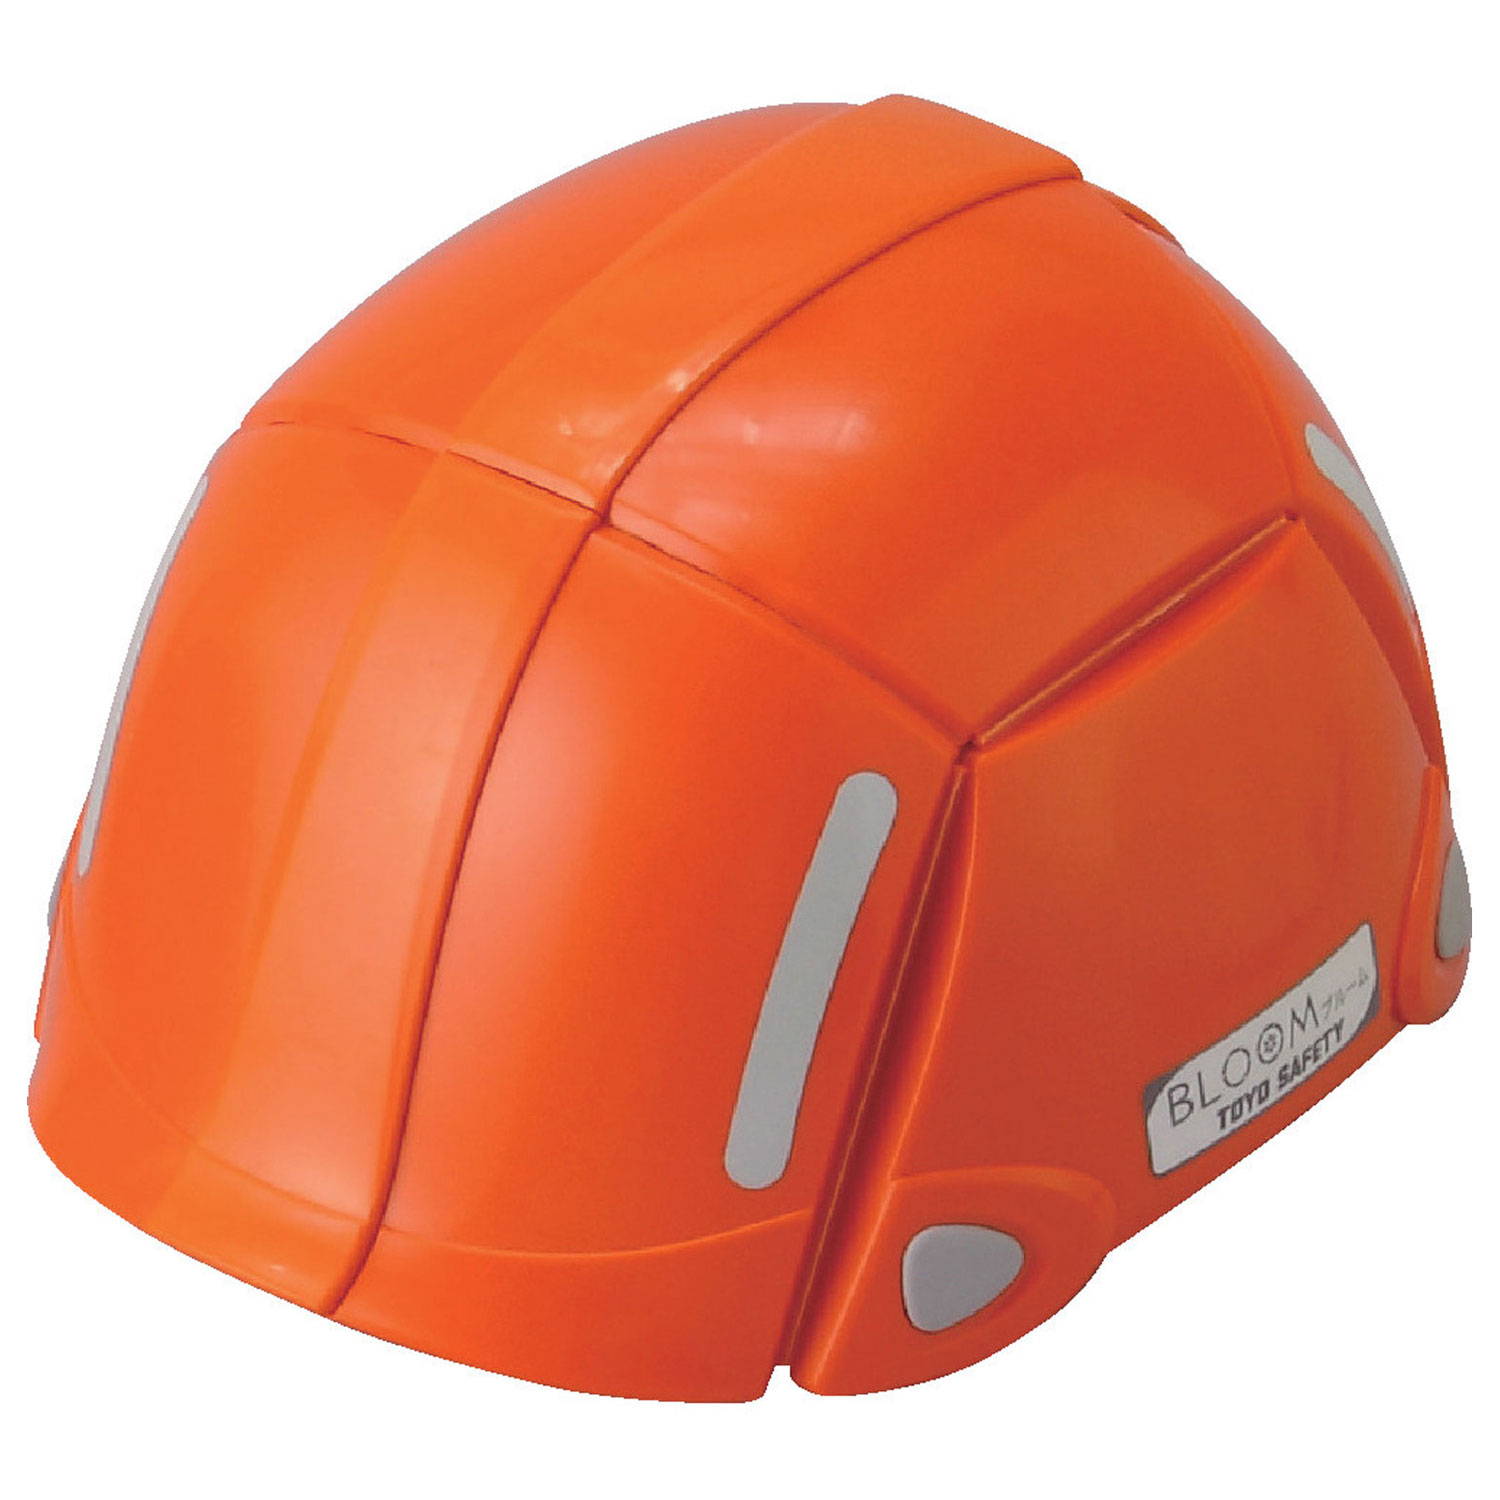 防災】ヘルメット 防災用 折りたたみヘルメット BLOOM オレンジ